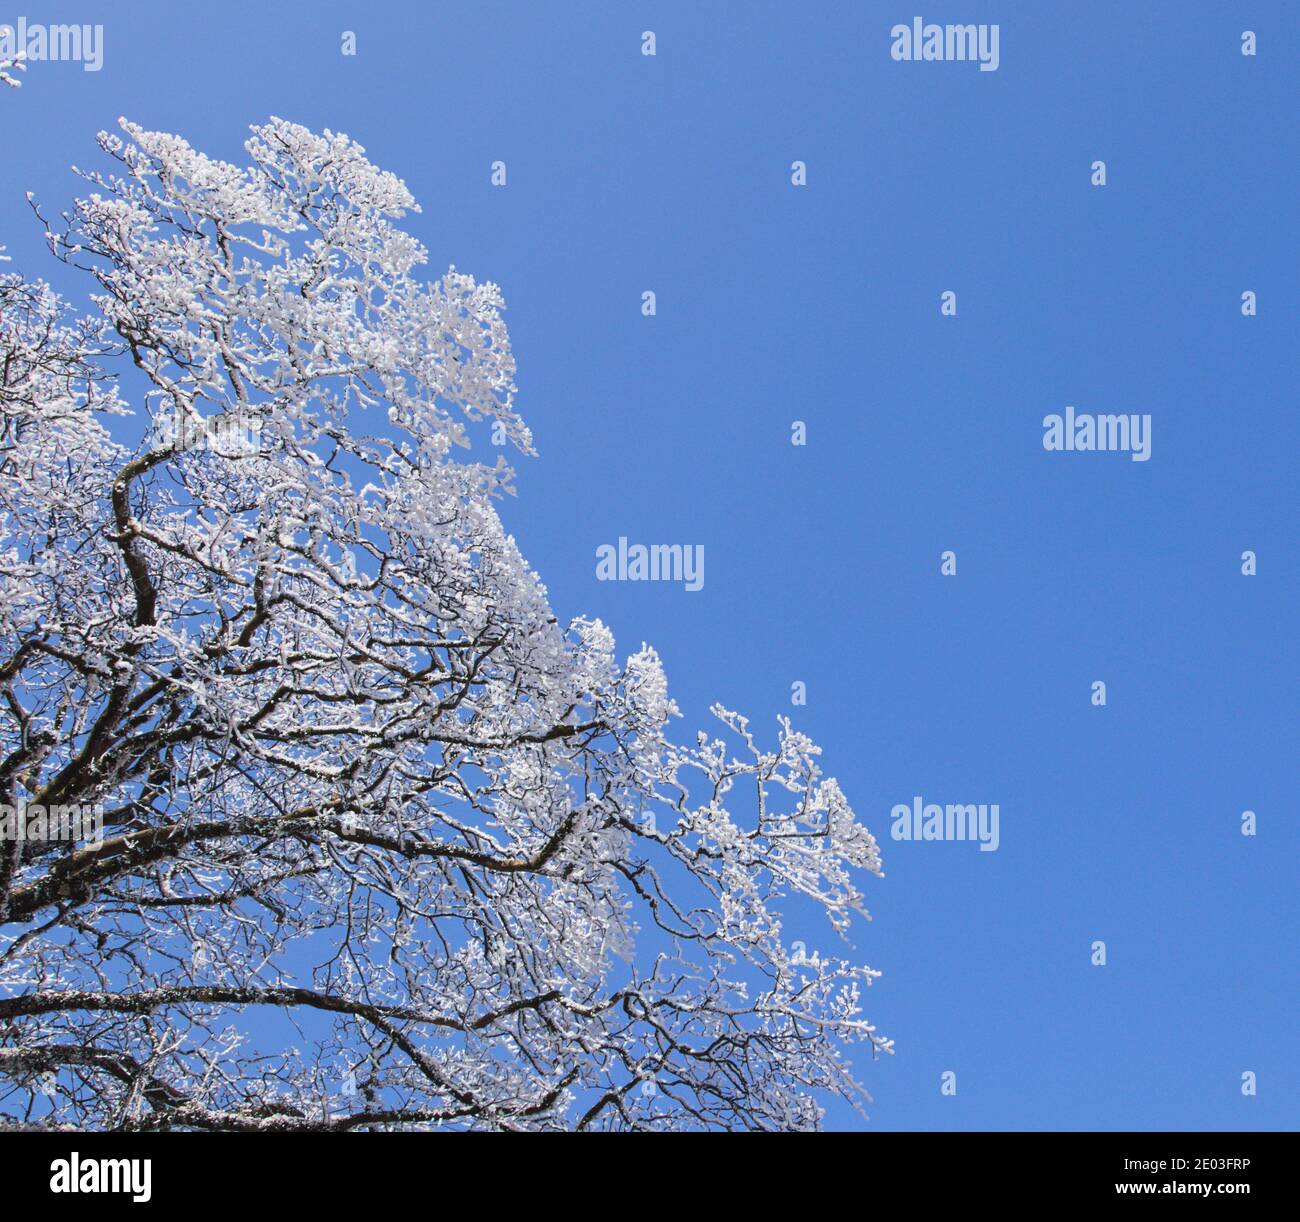 Rami innevati invernali, rime su rami, su fondo azzurro pulito Foto Stock